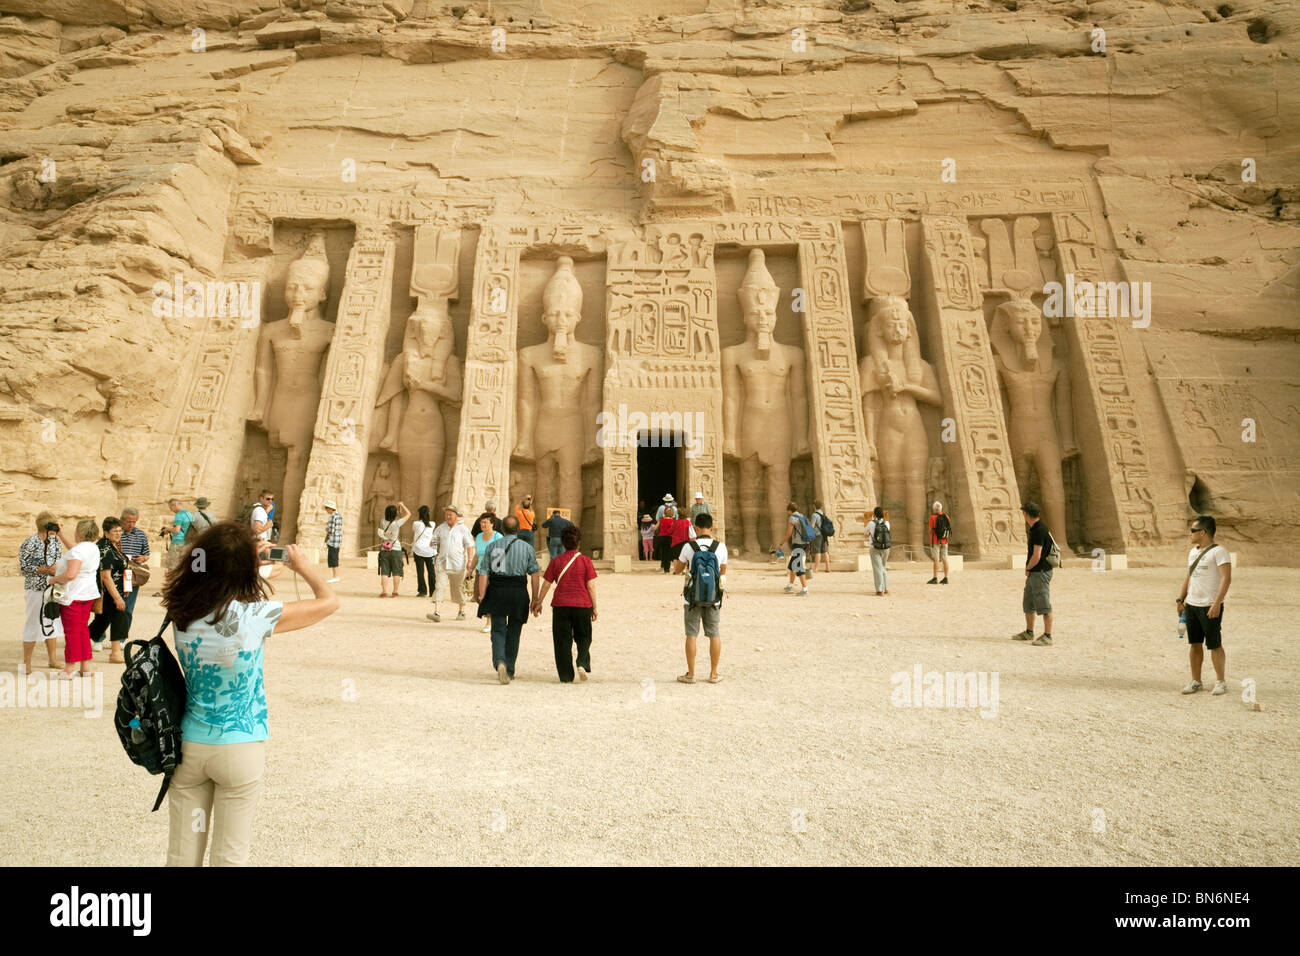 Touristes égyptiens; touristes photographiant l'ancien temple égyptien de la reine Nefertari à Abu Simbel, Haute-Egypte Afrique Banque D'Images